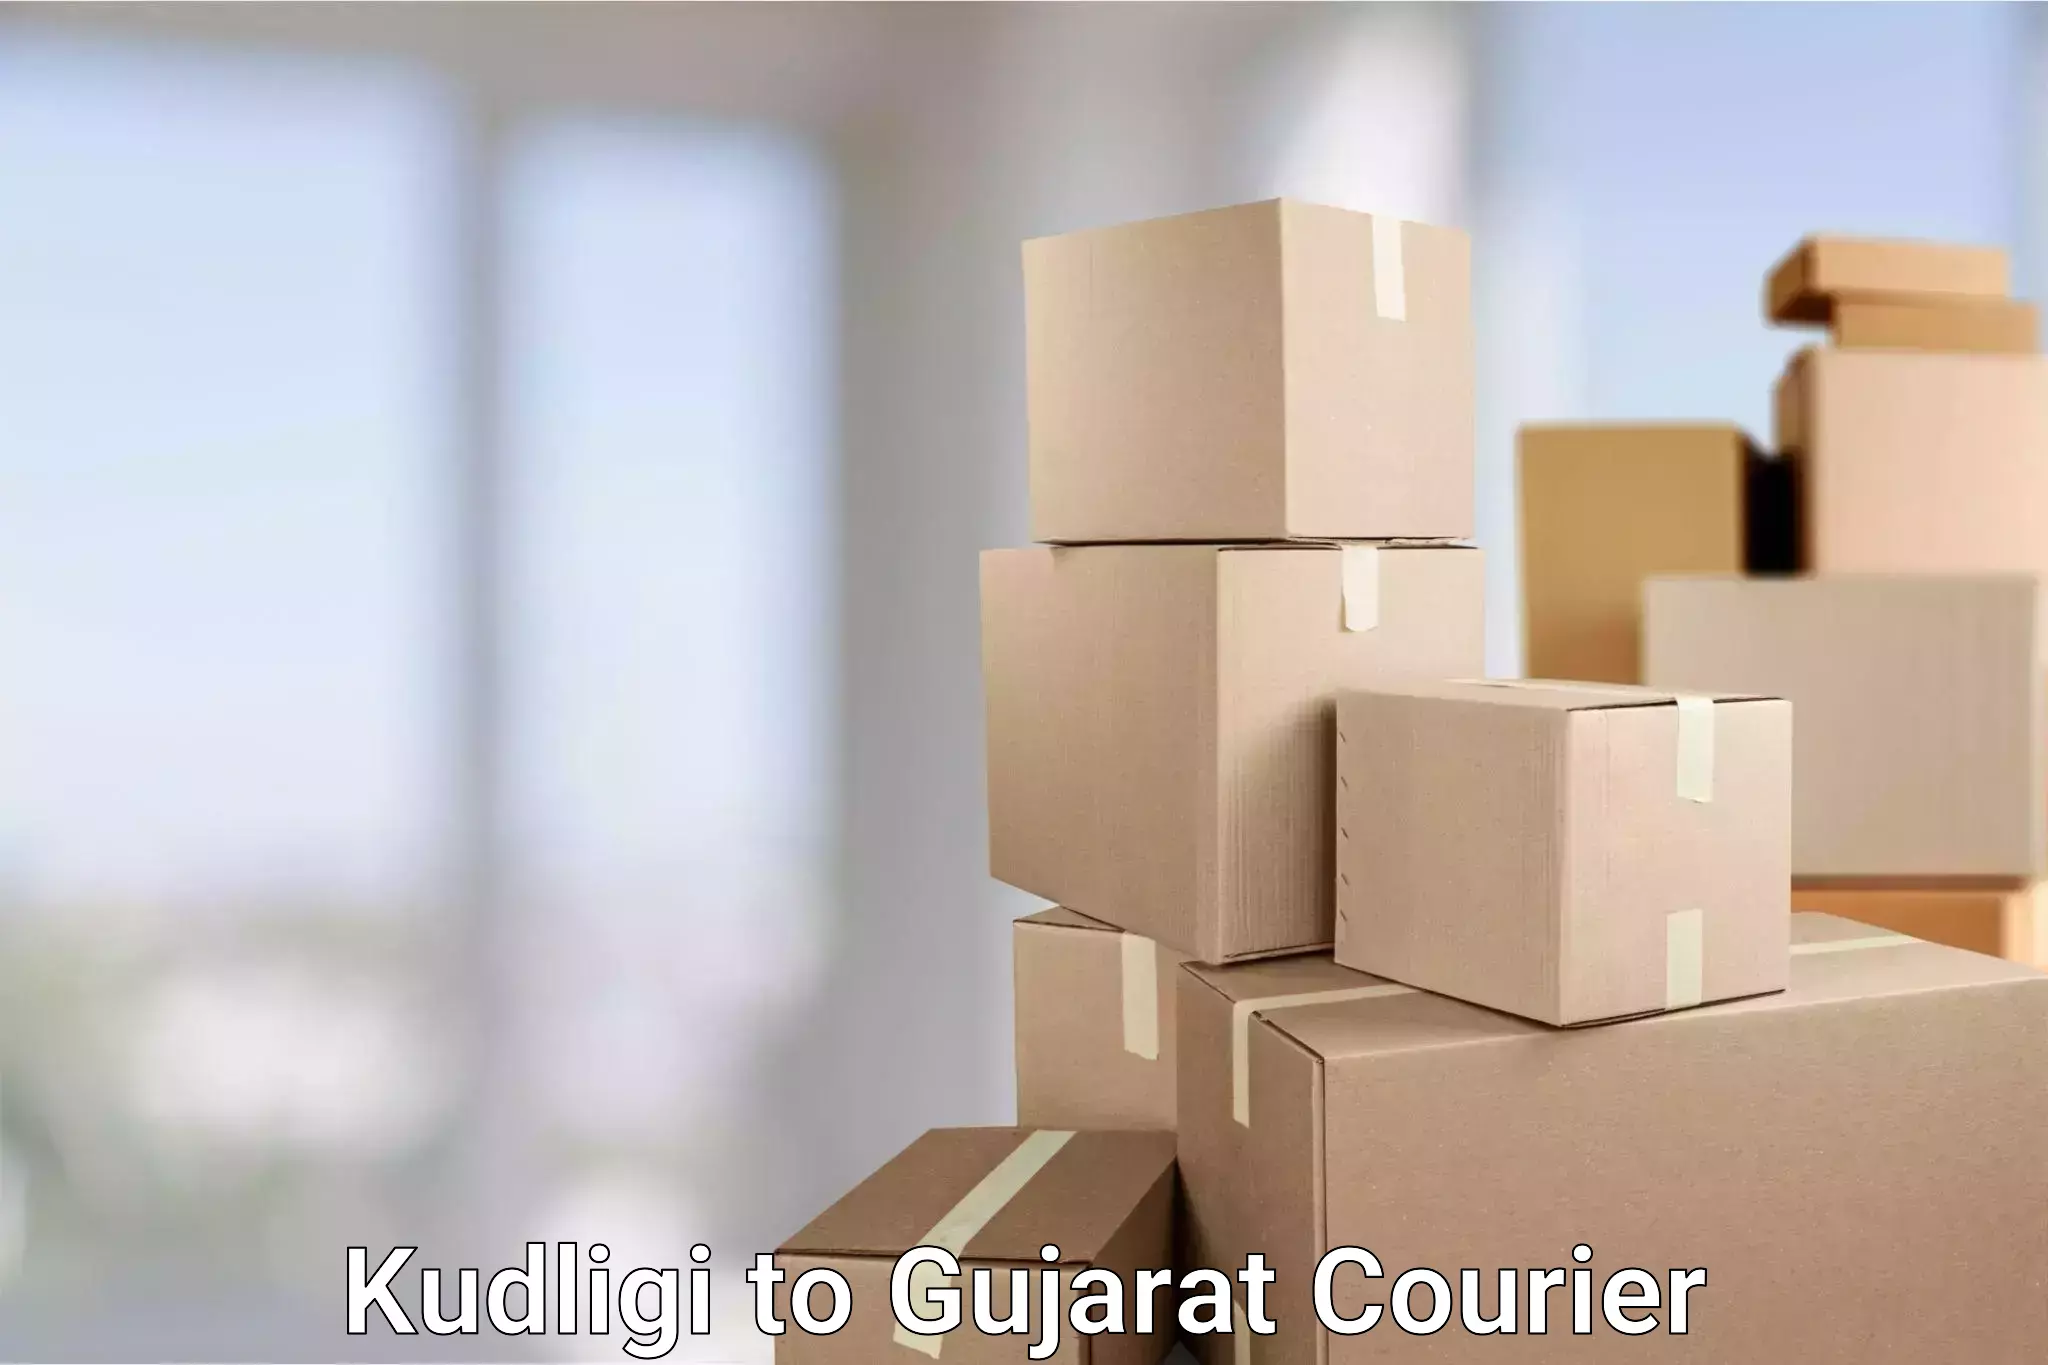 Quality courier partnerships Kudligi to Jamnagar